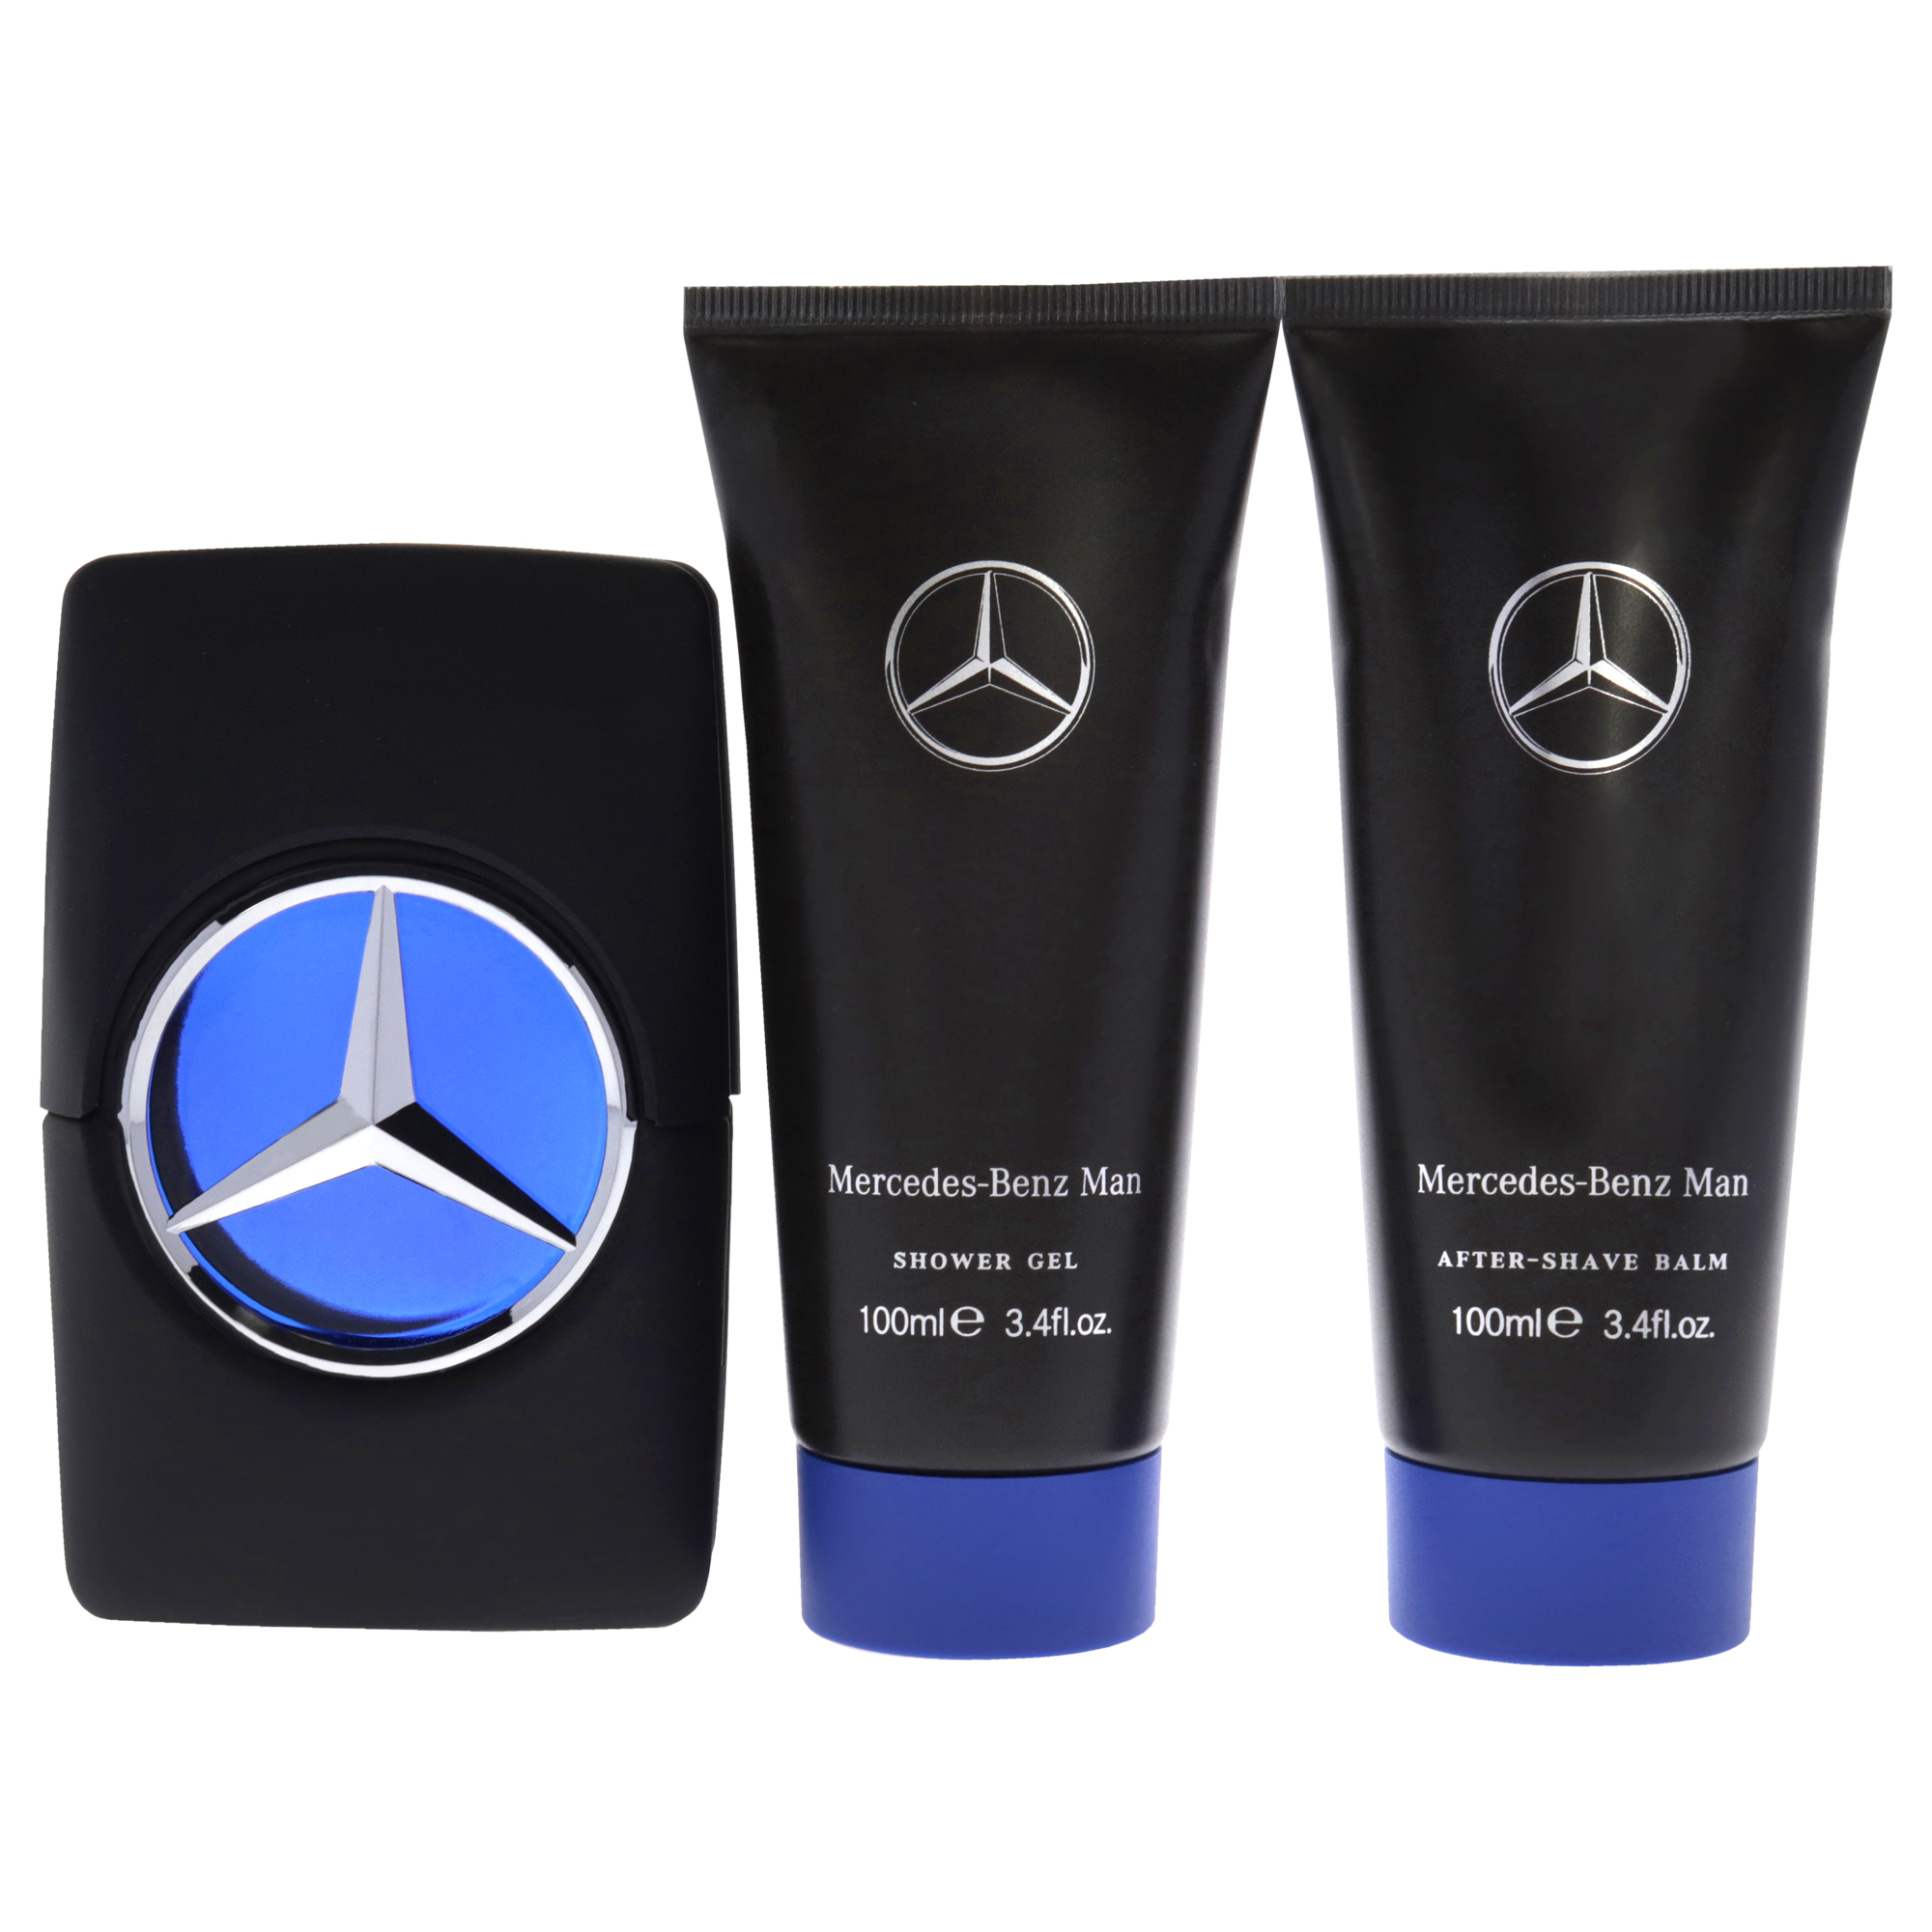 Mercedes-Benz Man by Mercedes-Benz for Men - 3 Pc Gift Set 3.4oz EDT Spray, 3.4oz Shower Gel, 3.4oz After Shave